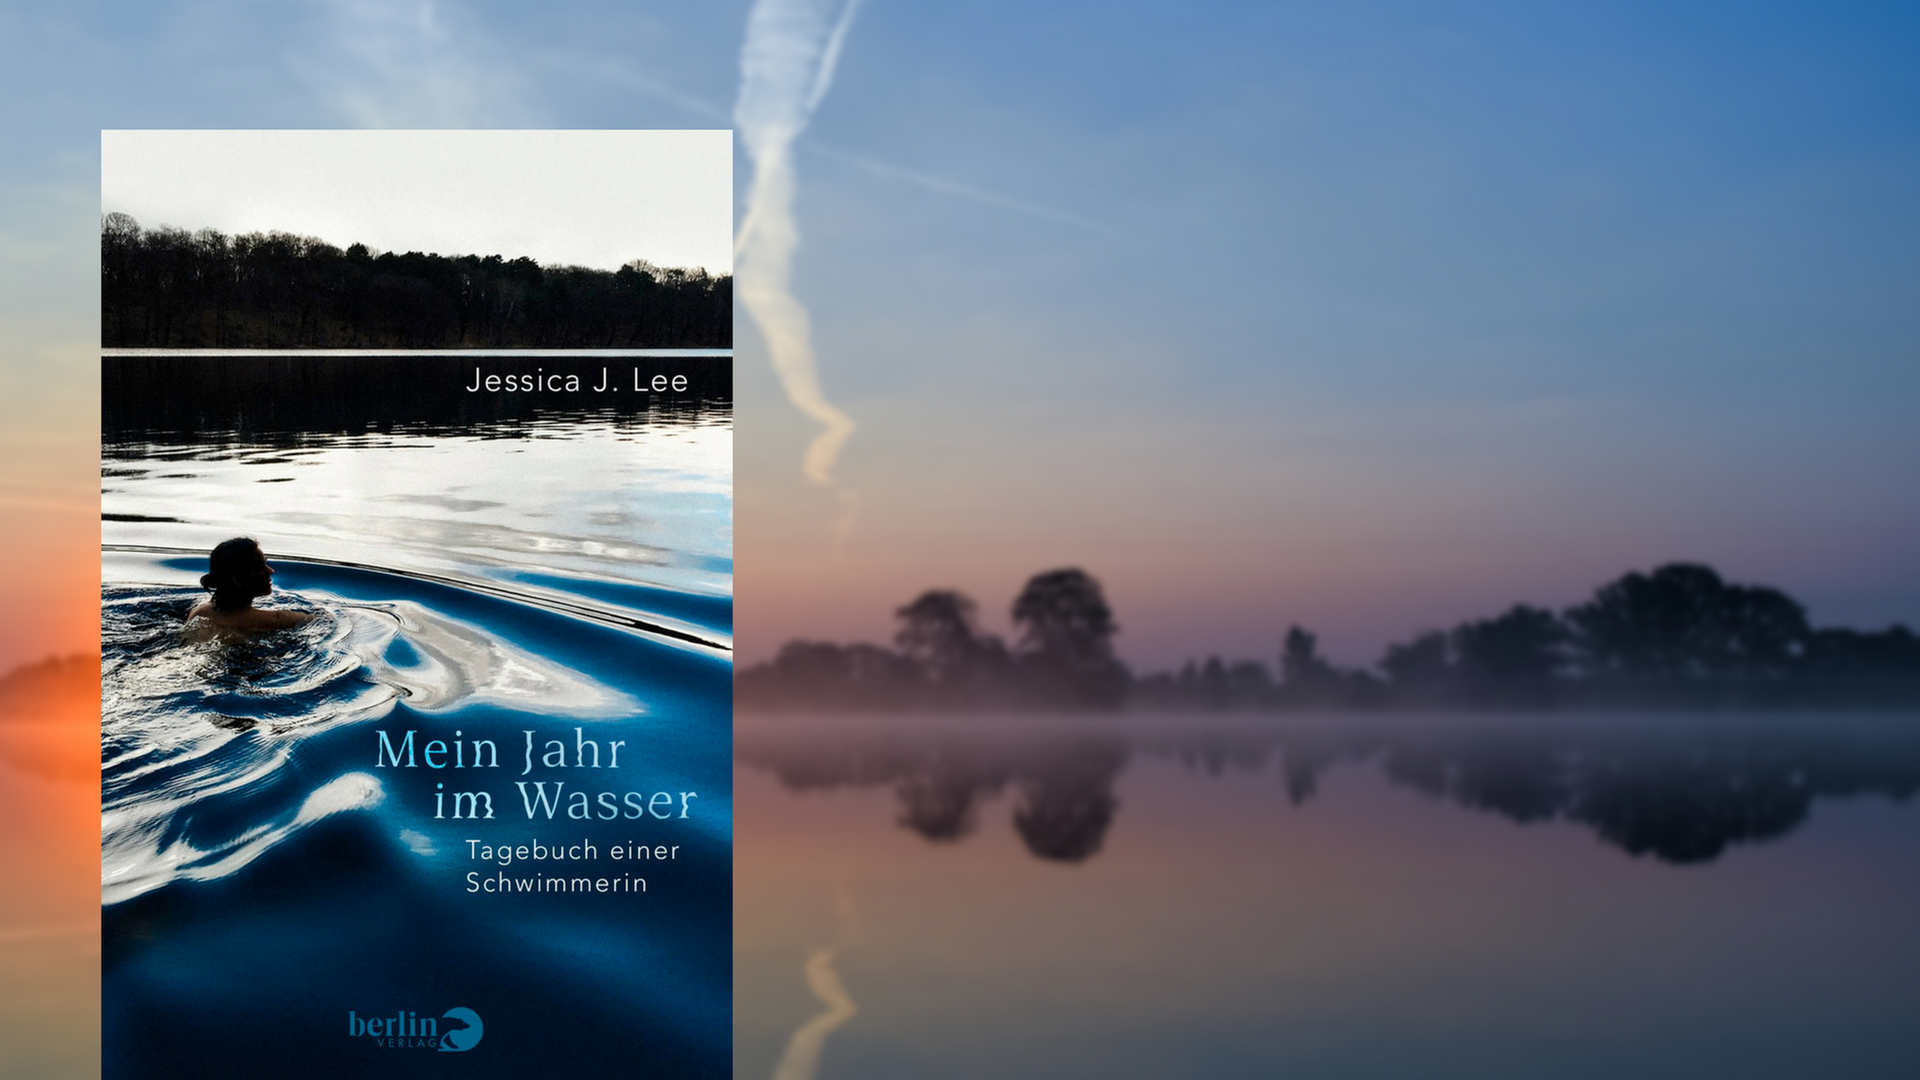 Buchcover: "Mein Jahr im Wasser"